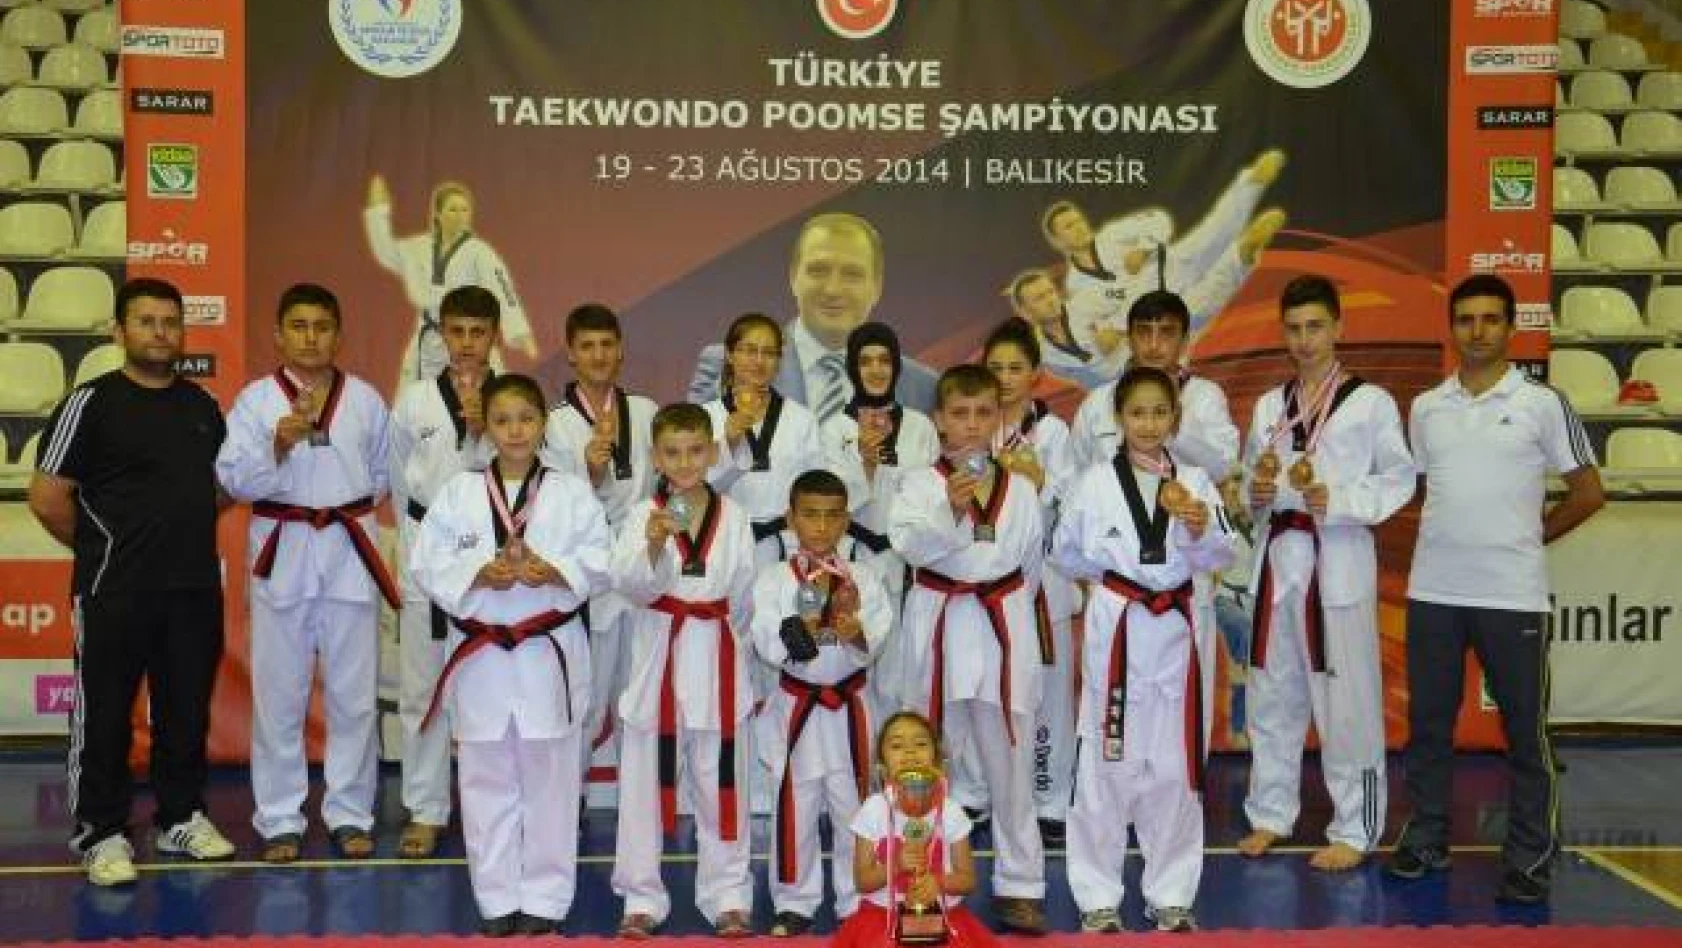 Balıkesir Poomse Türkiye Taekwondo Şampiyonası 19-23.08.2014